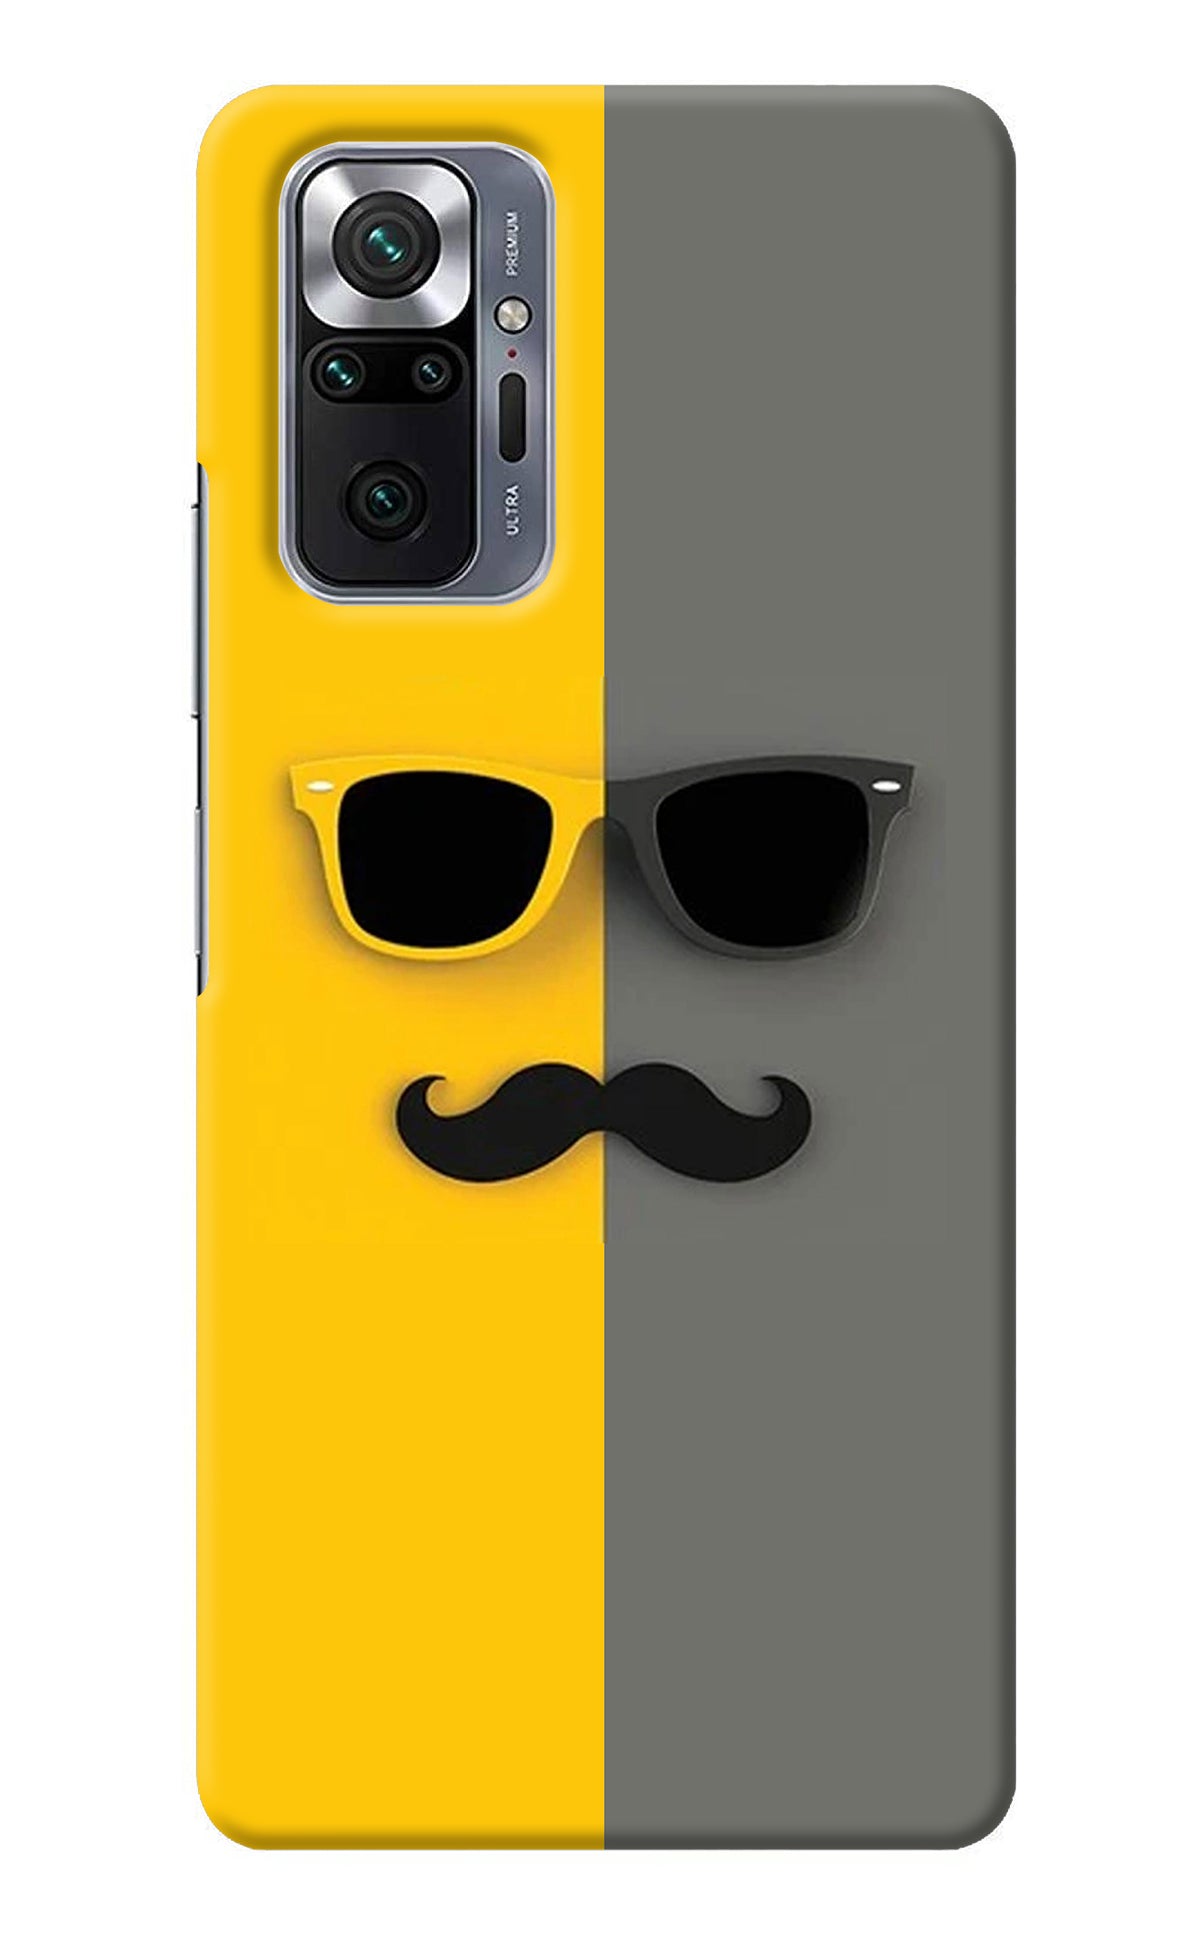 Sunglasses with Mustache Redmi Note 10 Pro Back Cover